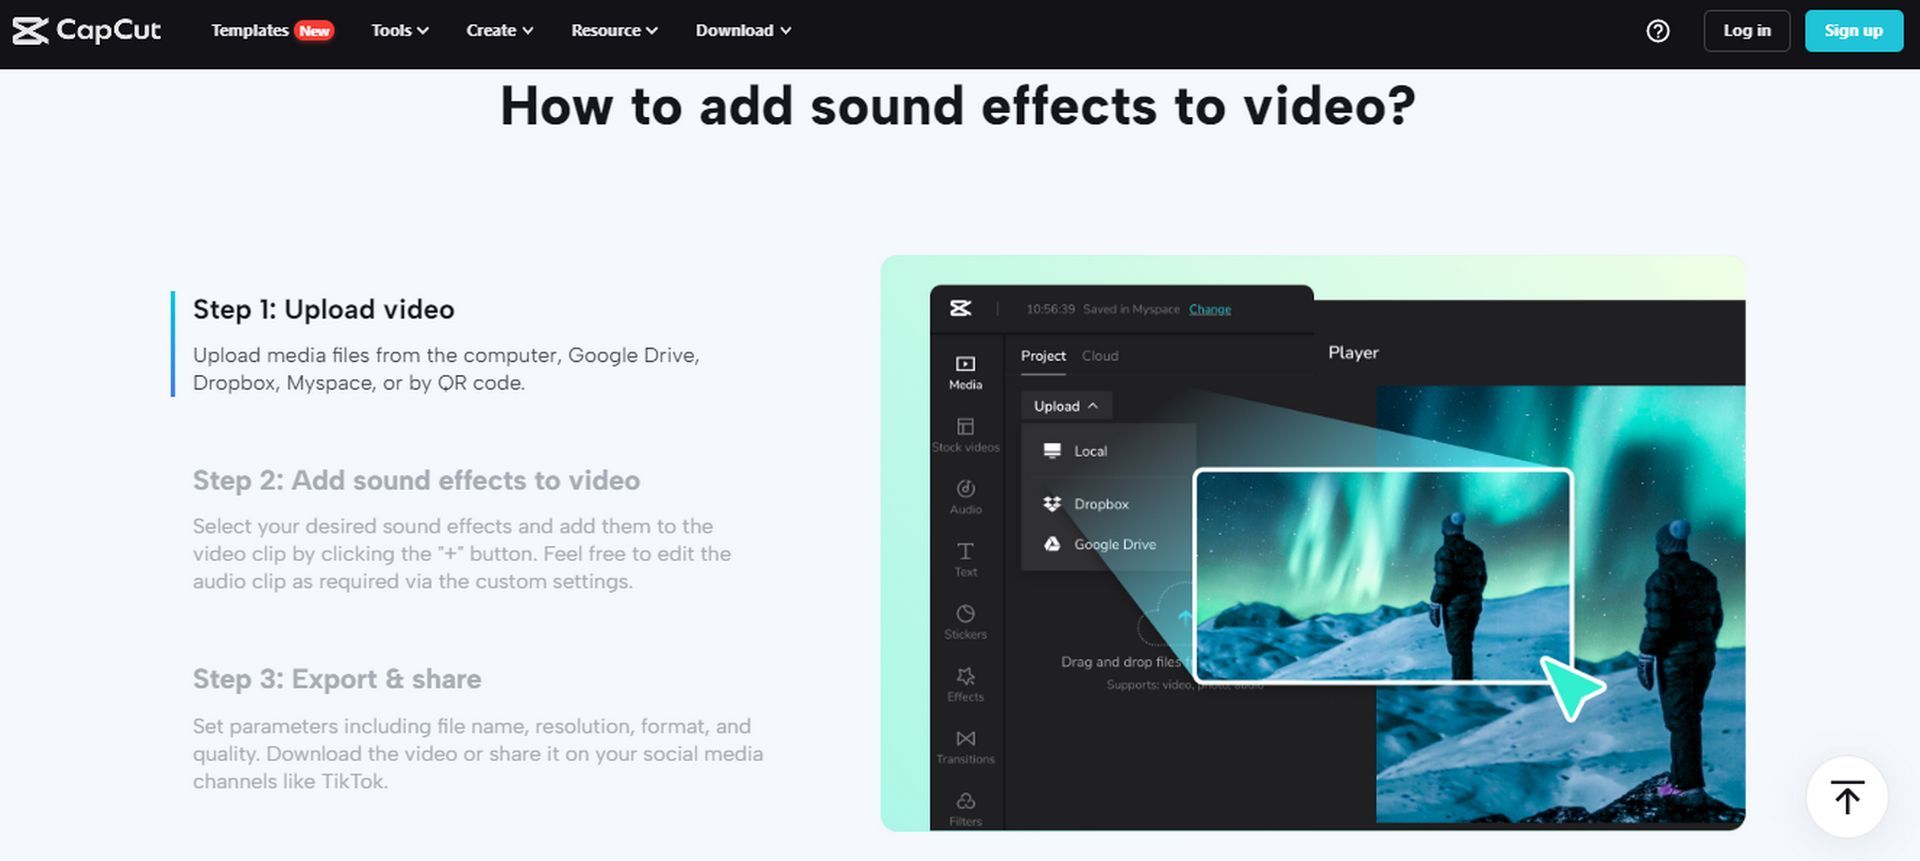 От тишины к эффекту: использование звуковых эффектов при редактировании видео